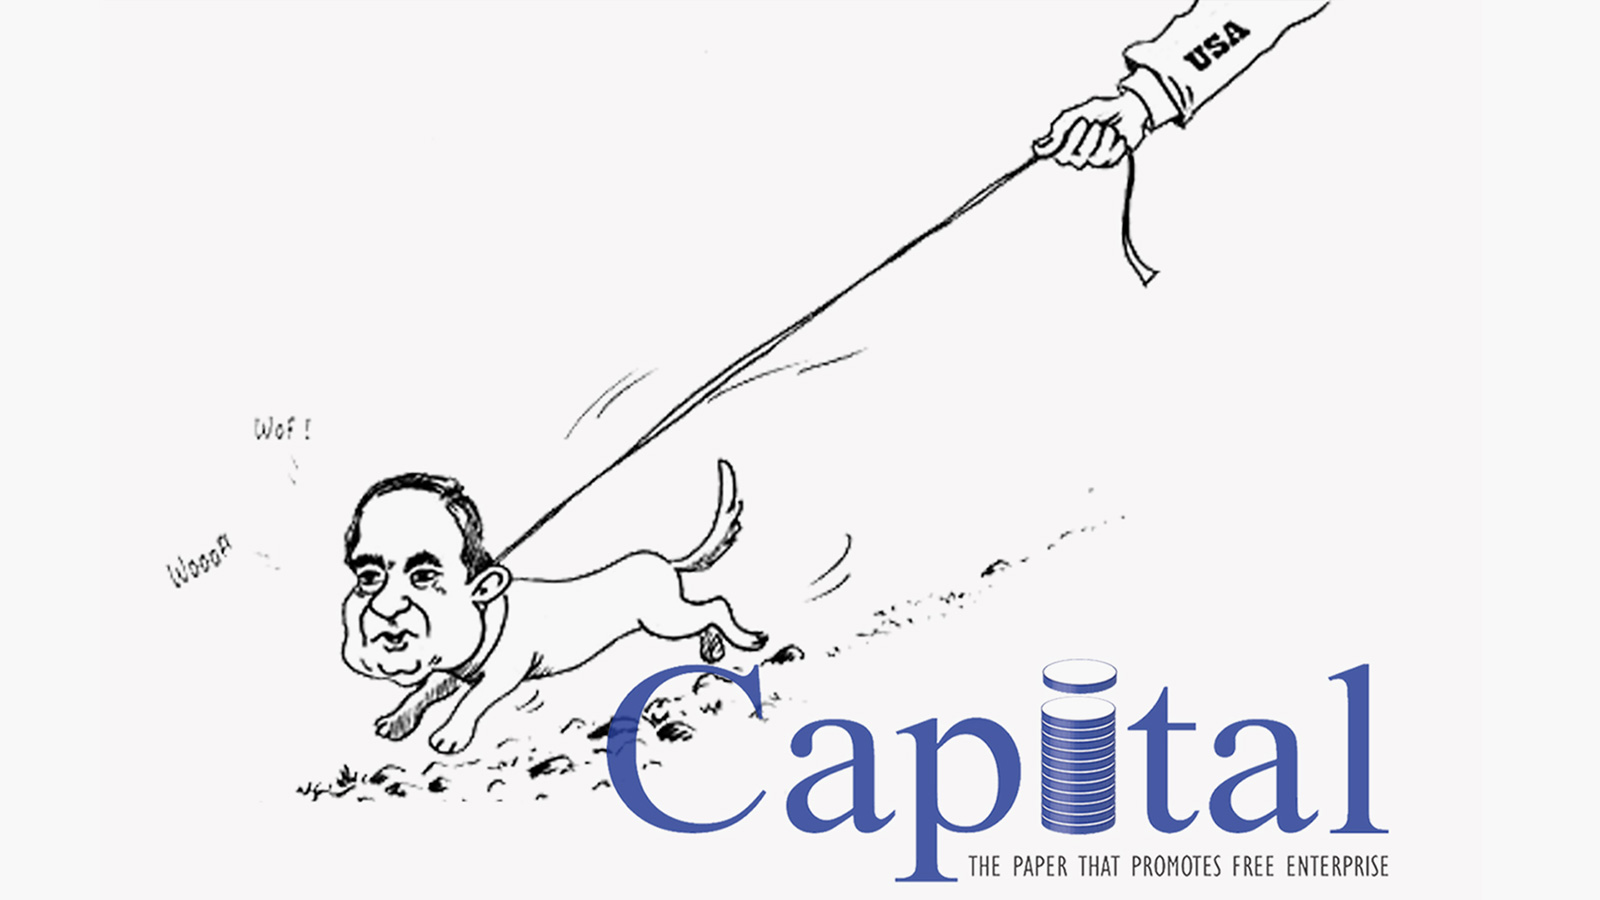 ‪كاريكاتير نشرته صحيفة كابيتال رفقة موضوعها‬ كاريكاتير نشرته صحيفة كابيتال رفقة موضوعها 